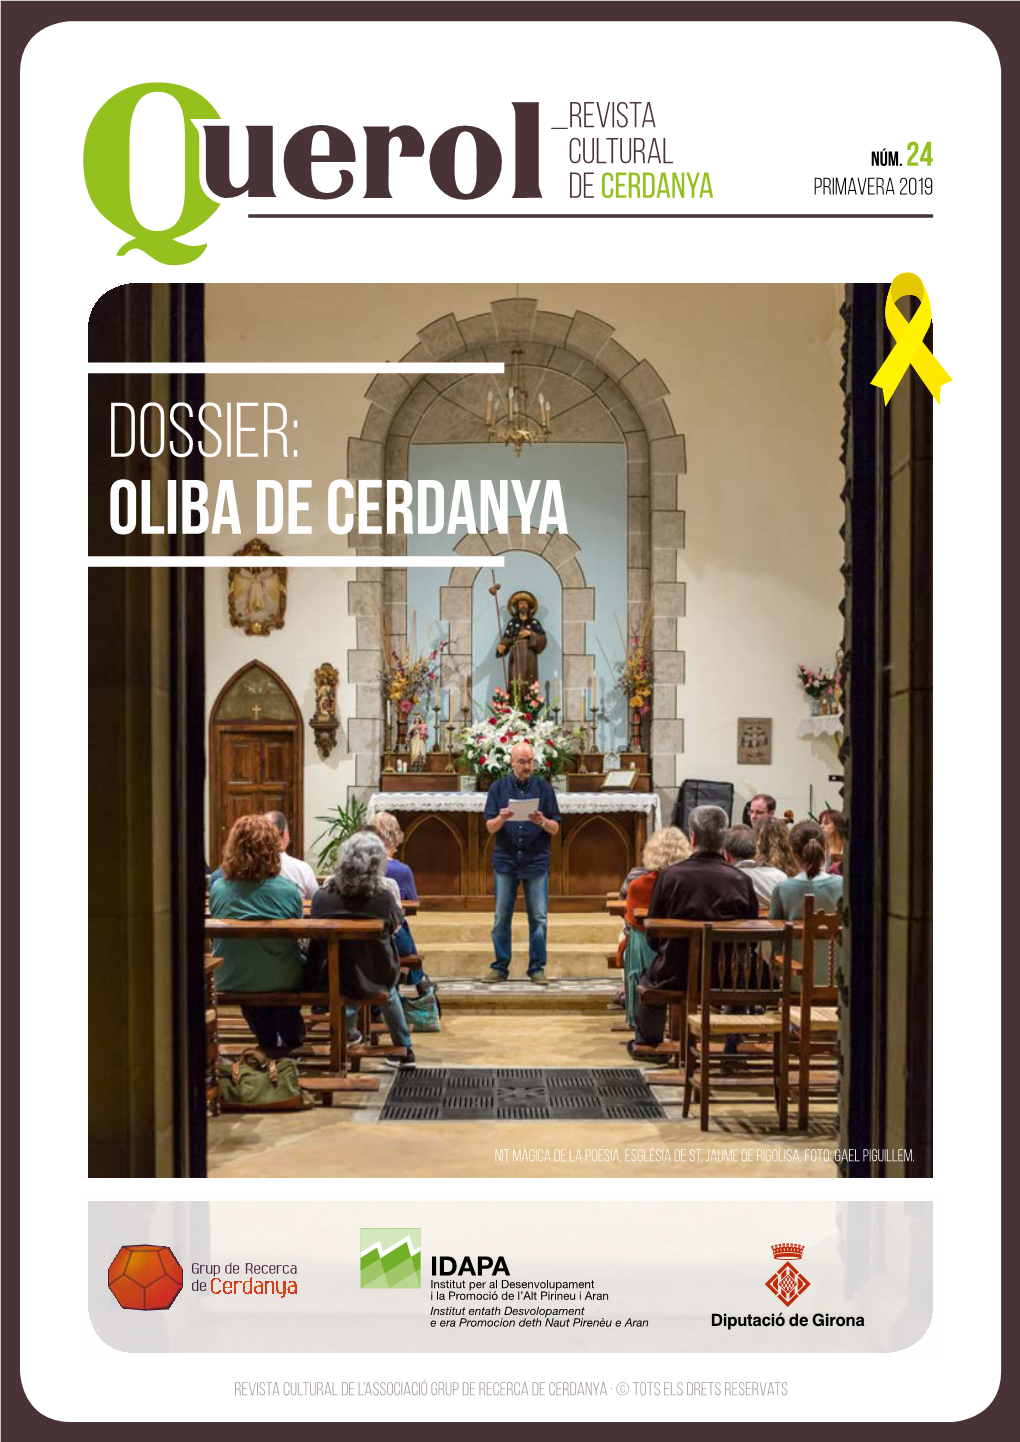 Dossier: OLIBA DE CERDANYA